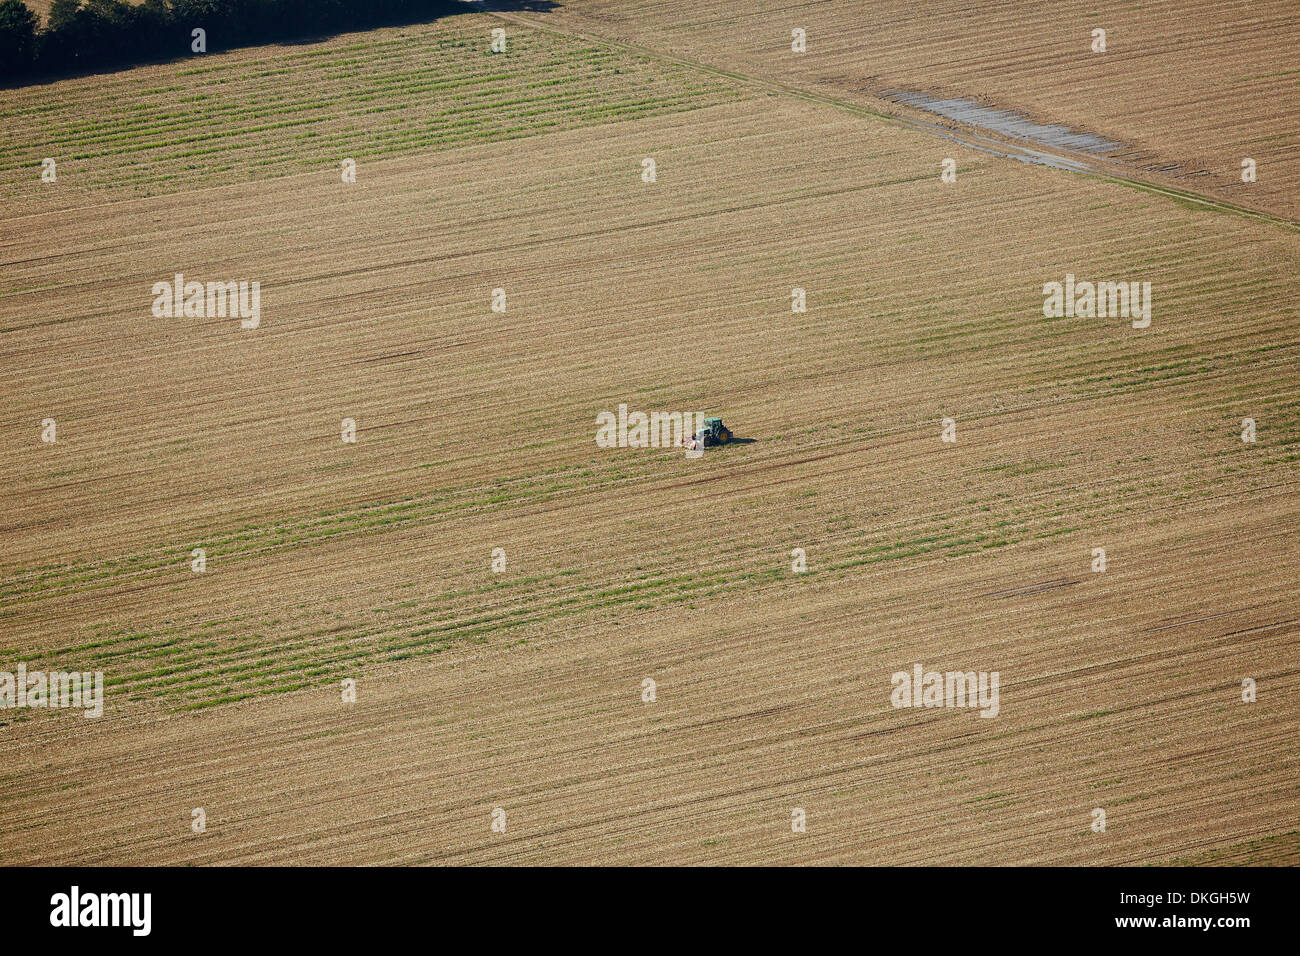 Le tracteur dans le champ, à l'automne, Bremgarten, Bade-Wurtemberg, Allemagne, photo aérienne Banque D'Images